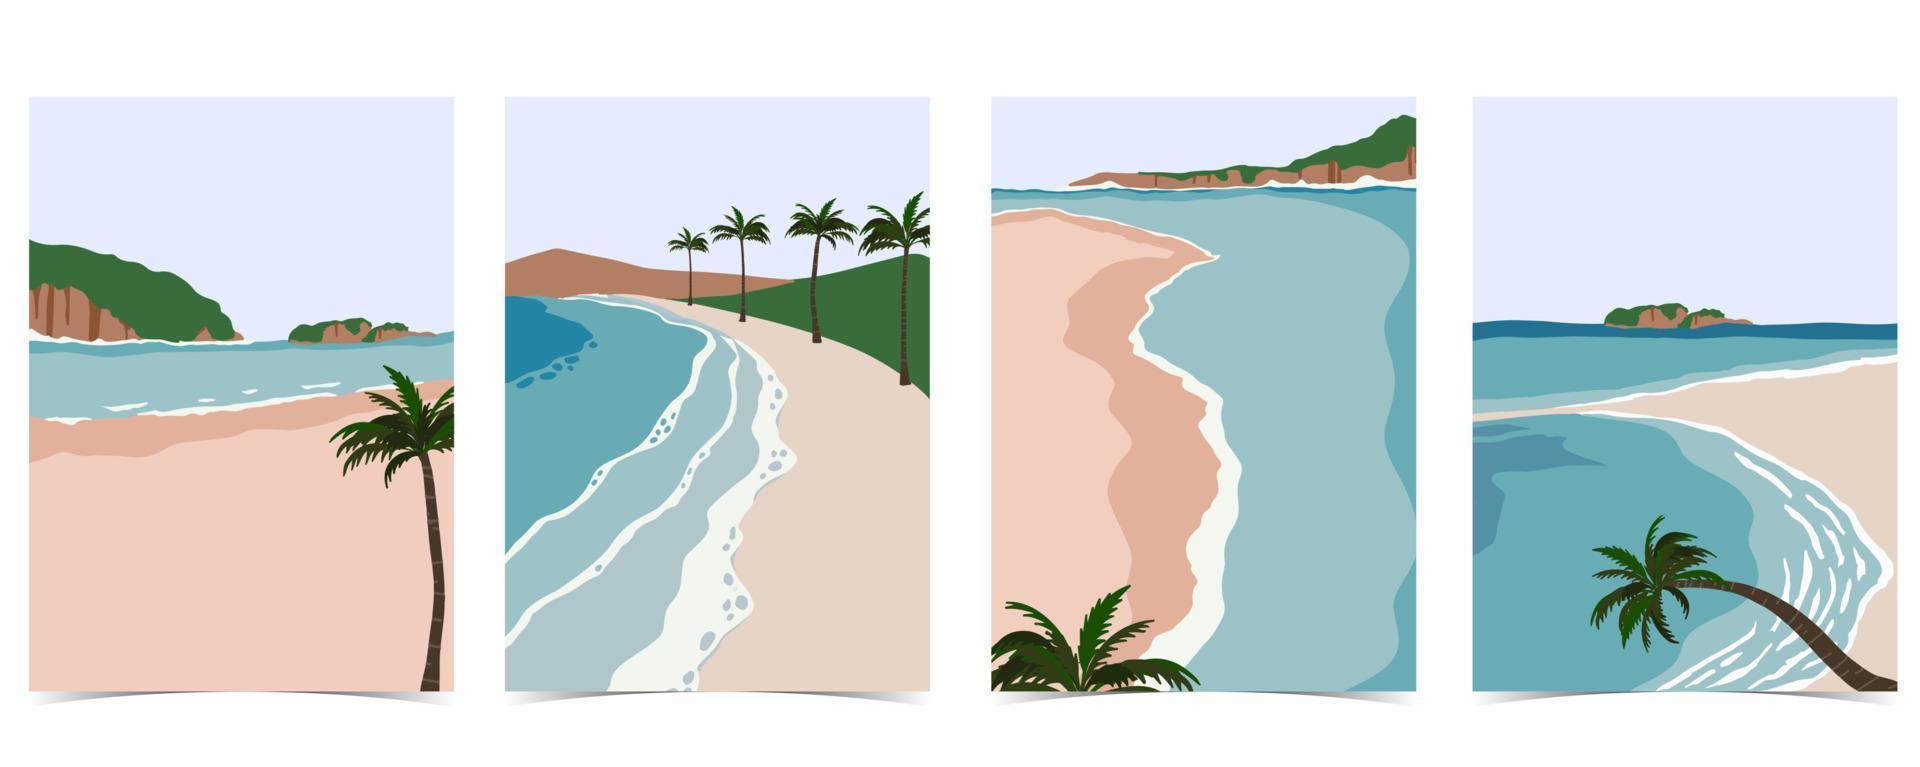 cartão postal de praia com sol, mar, céu e montanha durante o dia vetor